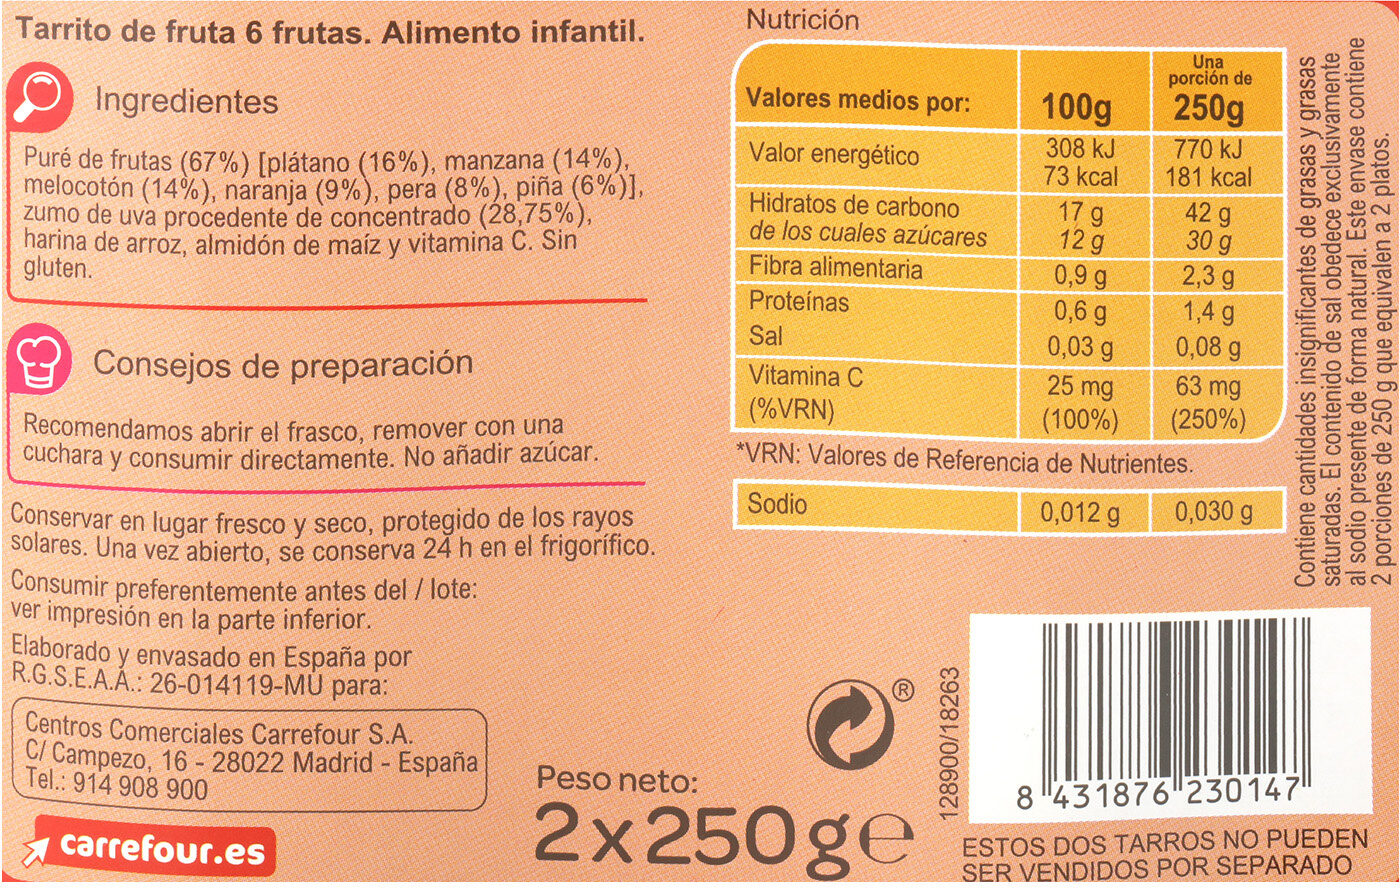 Tarrito 6 frutas - Información nutricional